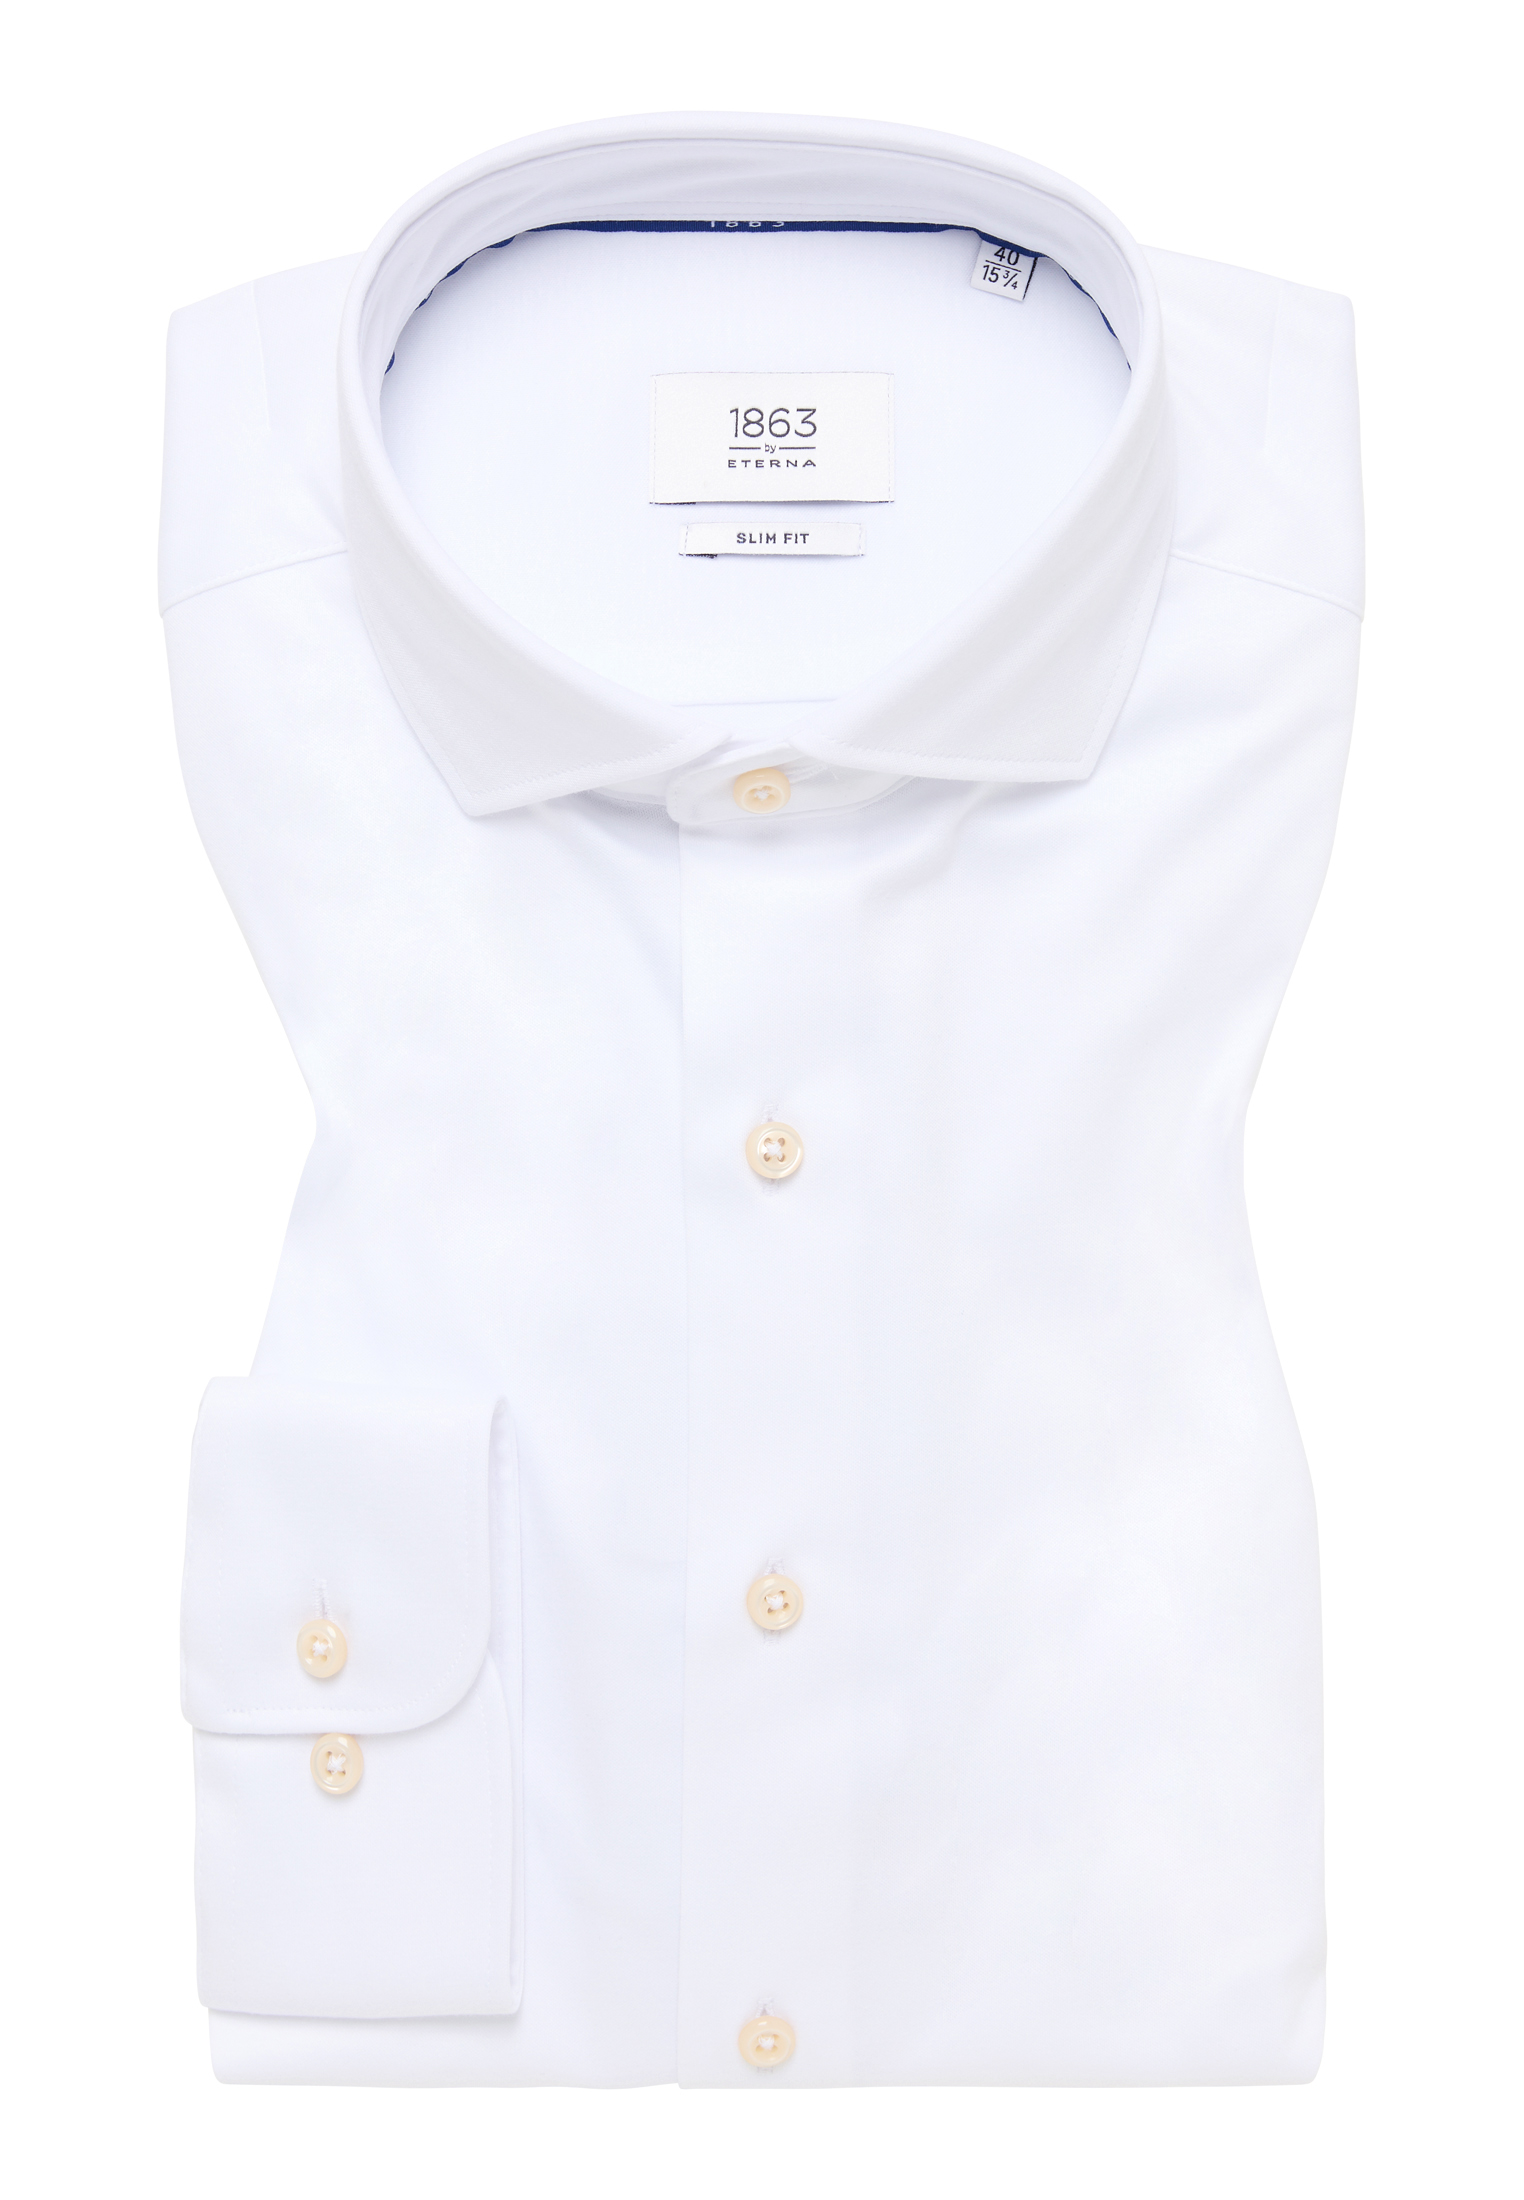 SLIM FIT Jersey | Shirt weiß Langarm 1SH00378-00-01-40-1/1 in 40 | | weiß | unifarben